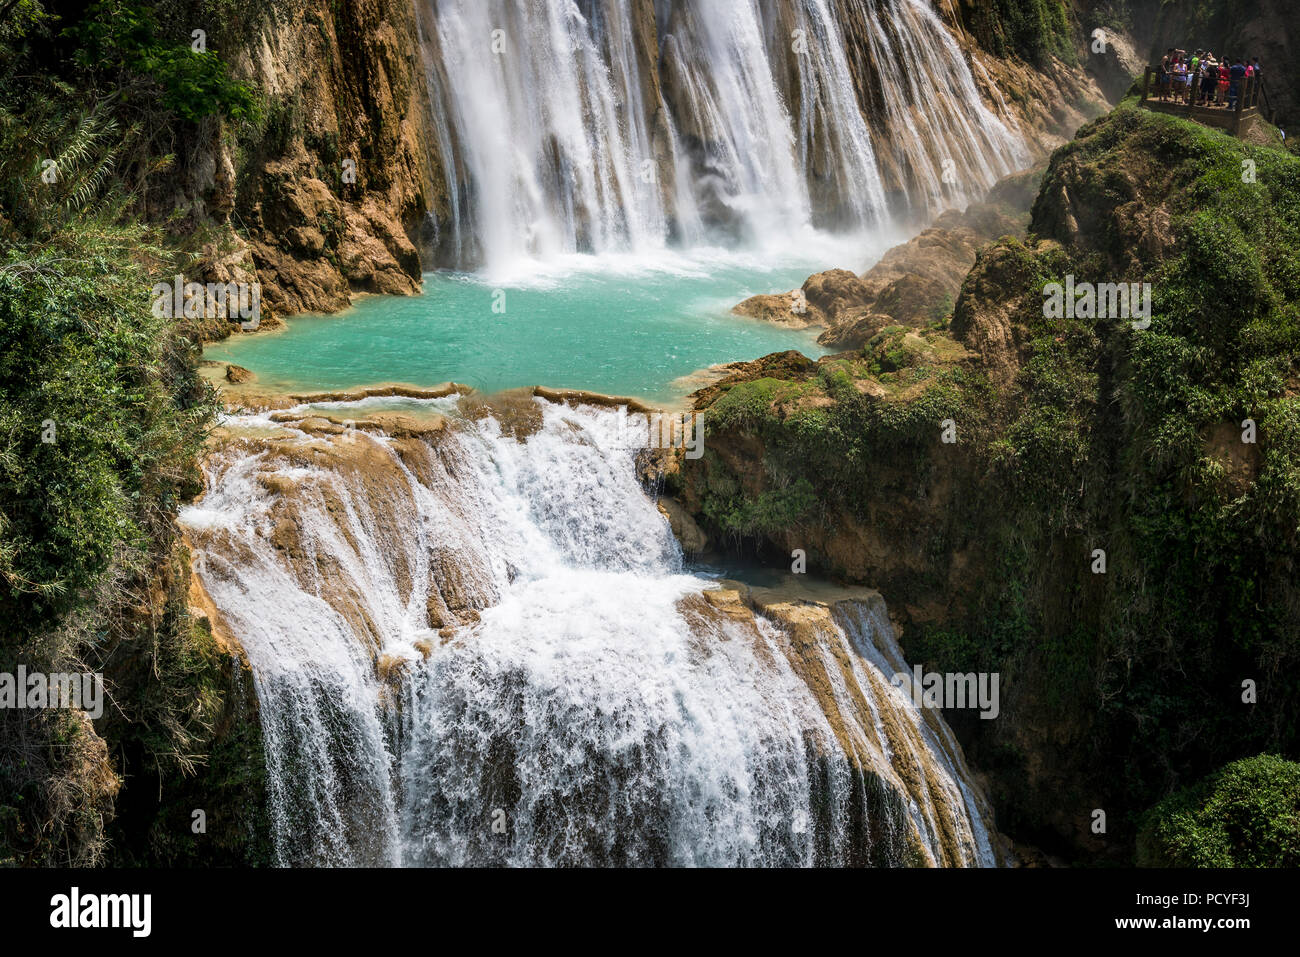 https://c8.alamy.com/comp/PCYF3J/chiflon-waterfall-cascada-velo-de-novia-chiapas-mexico-PCYF3J.jpg